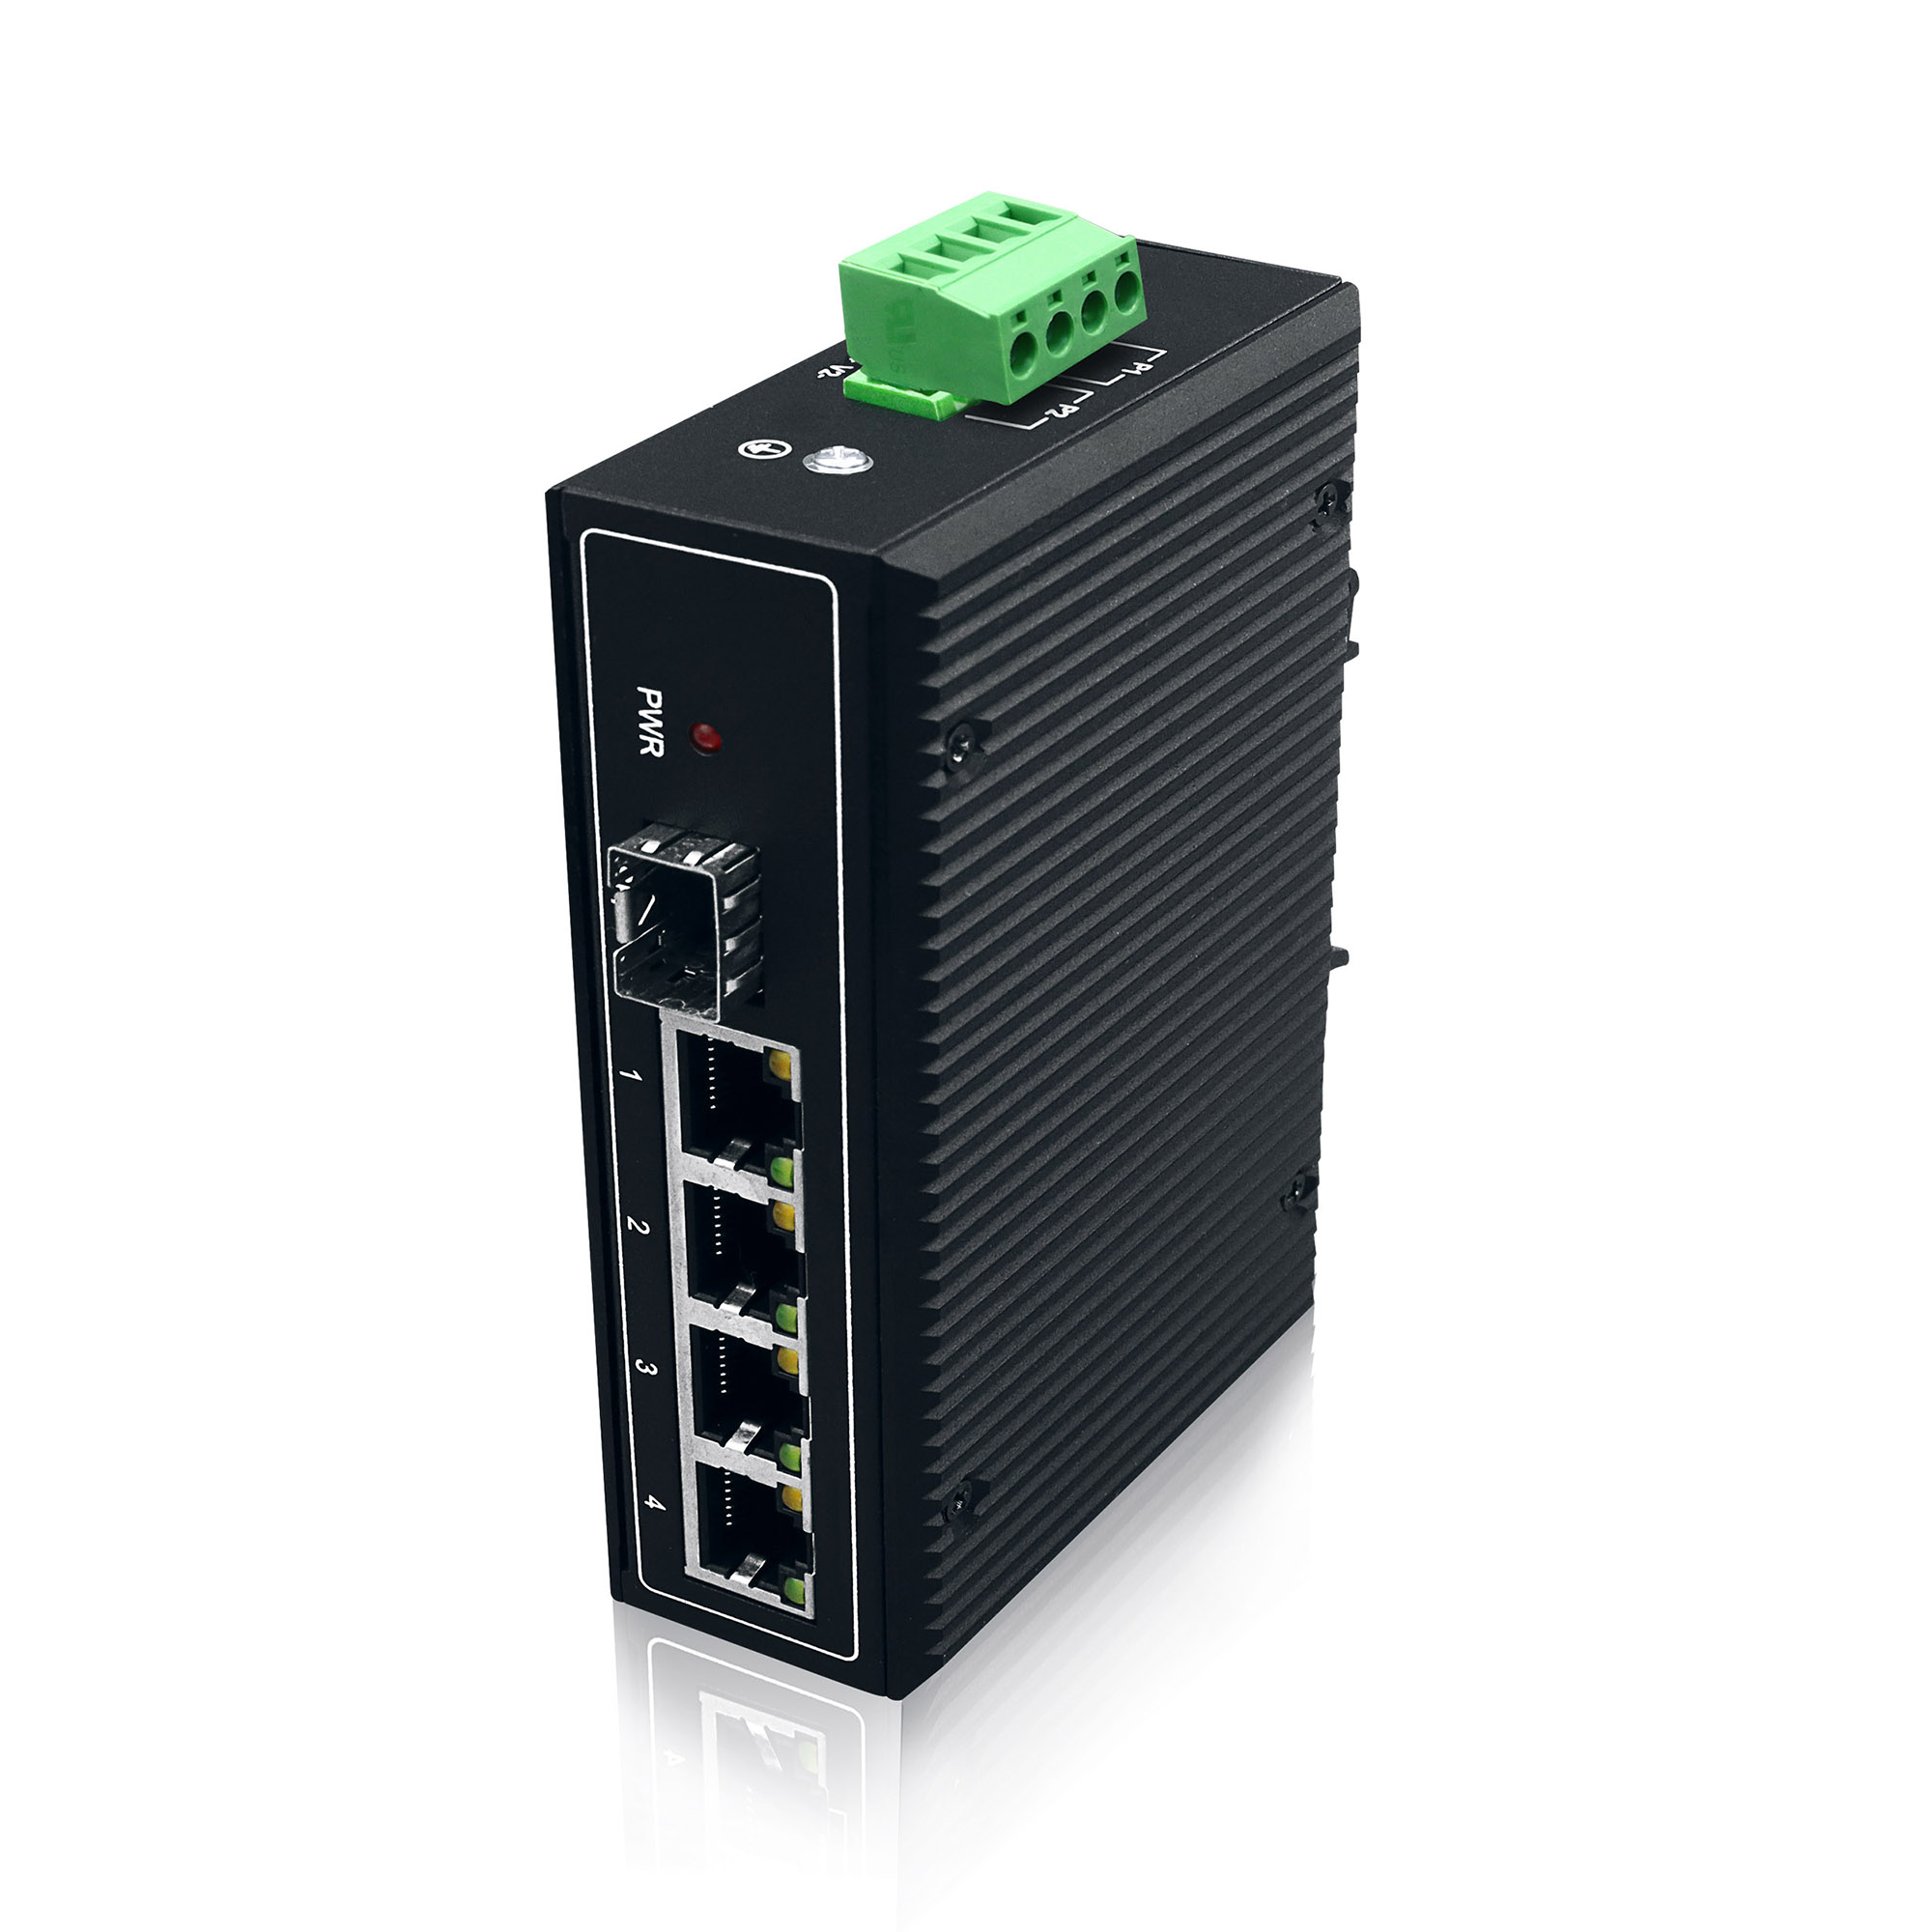 YN-SG105S Industrial Ethernet Switch